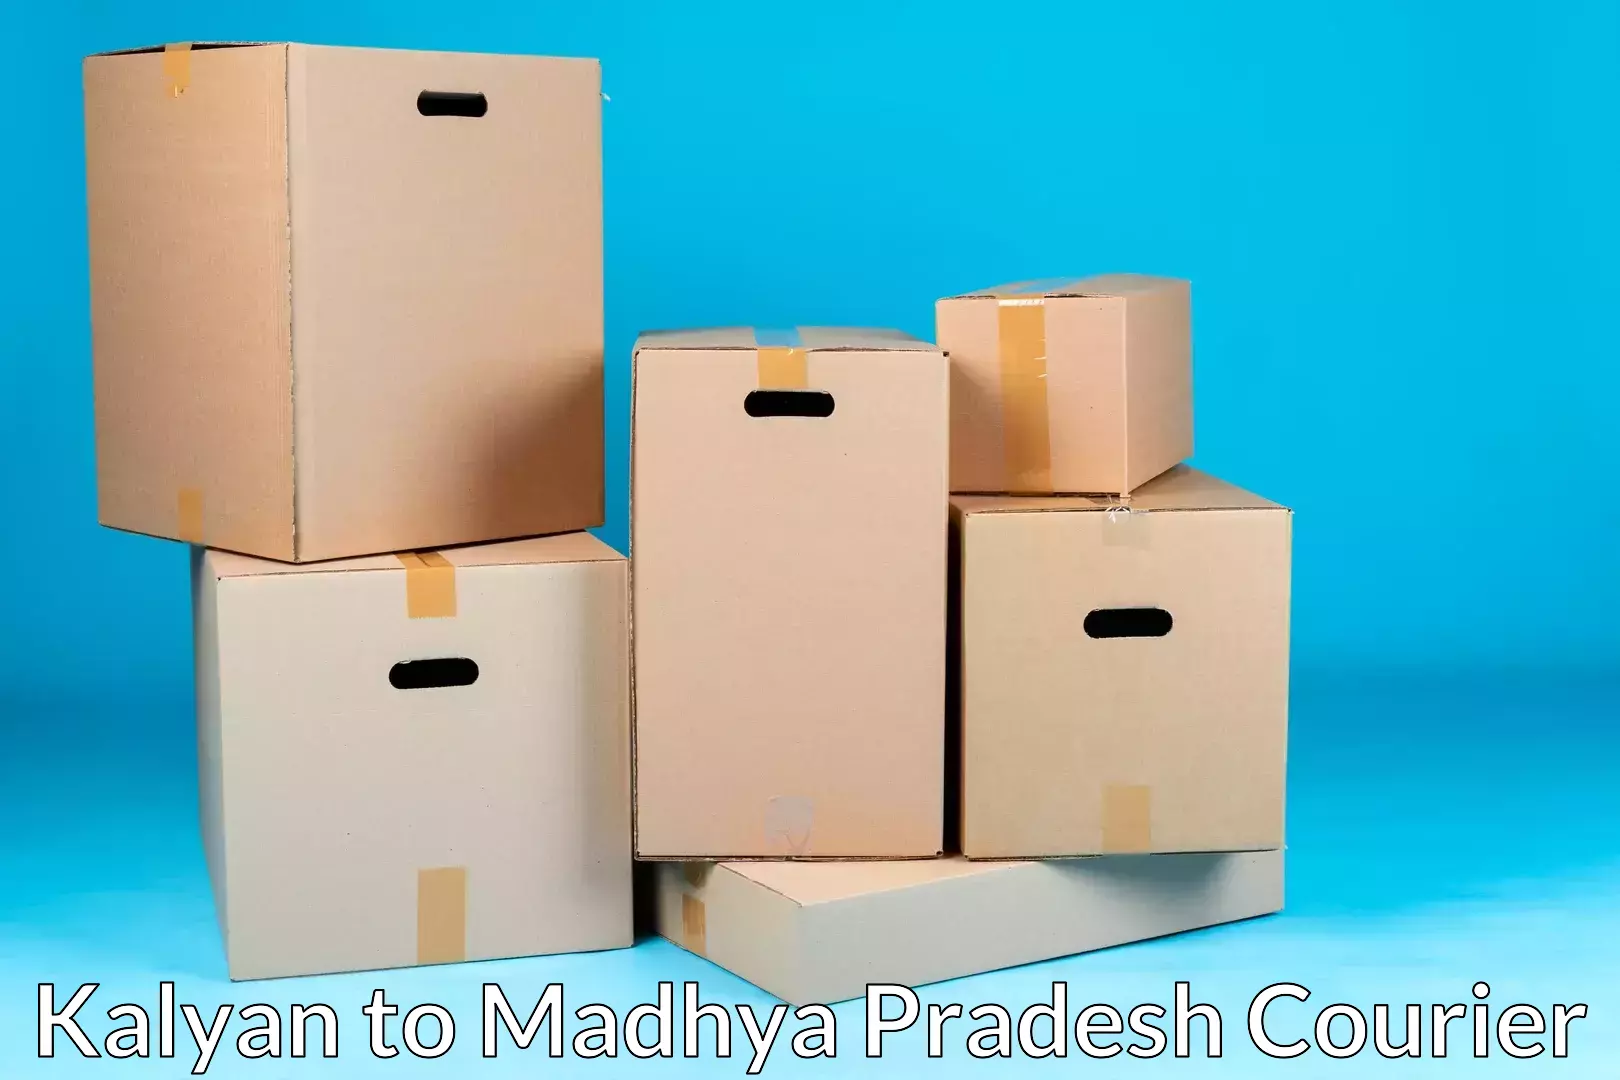 Residential moving experts Kalyan to Madhya Pradesh